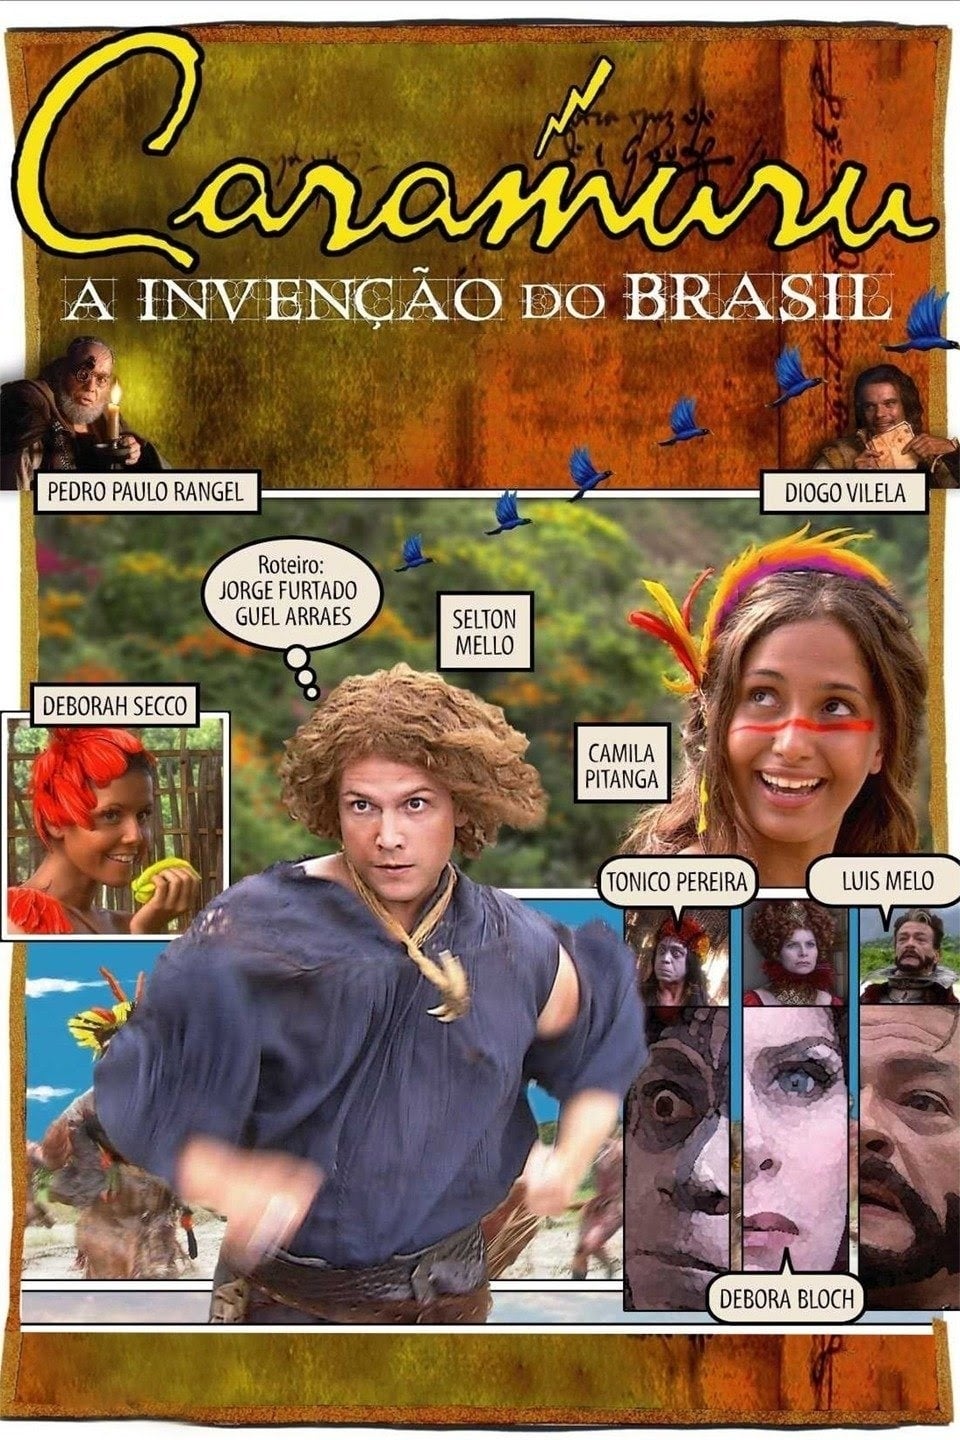 Caramuru: A Invenção do Brasil film